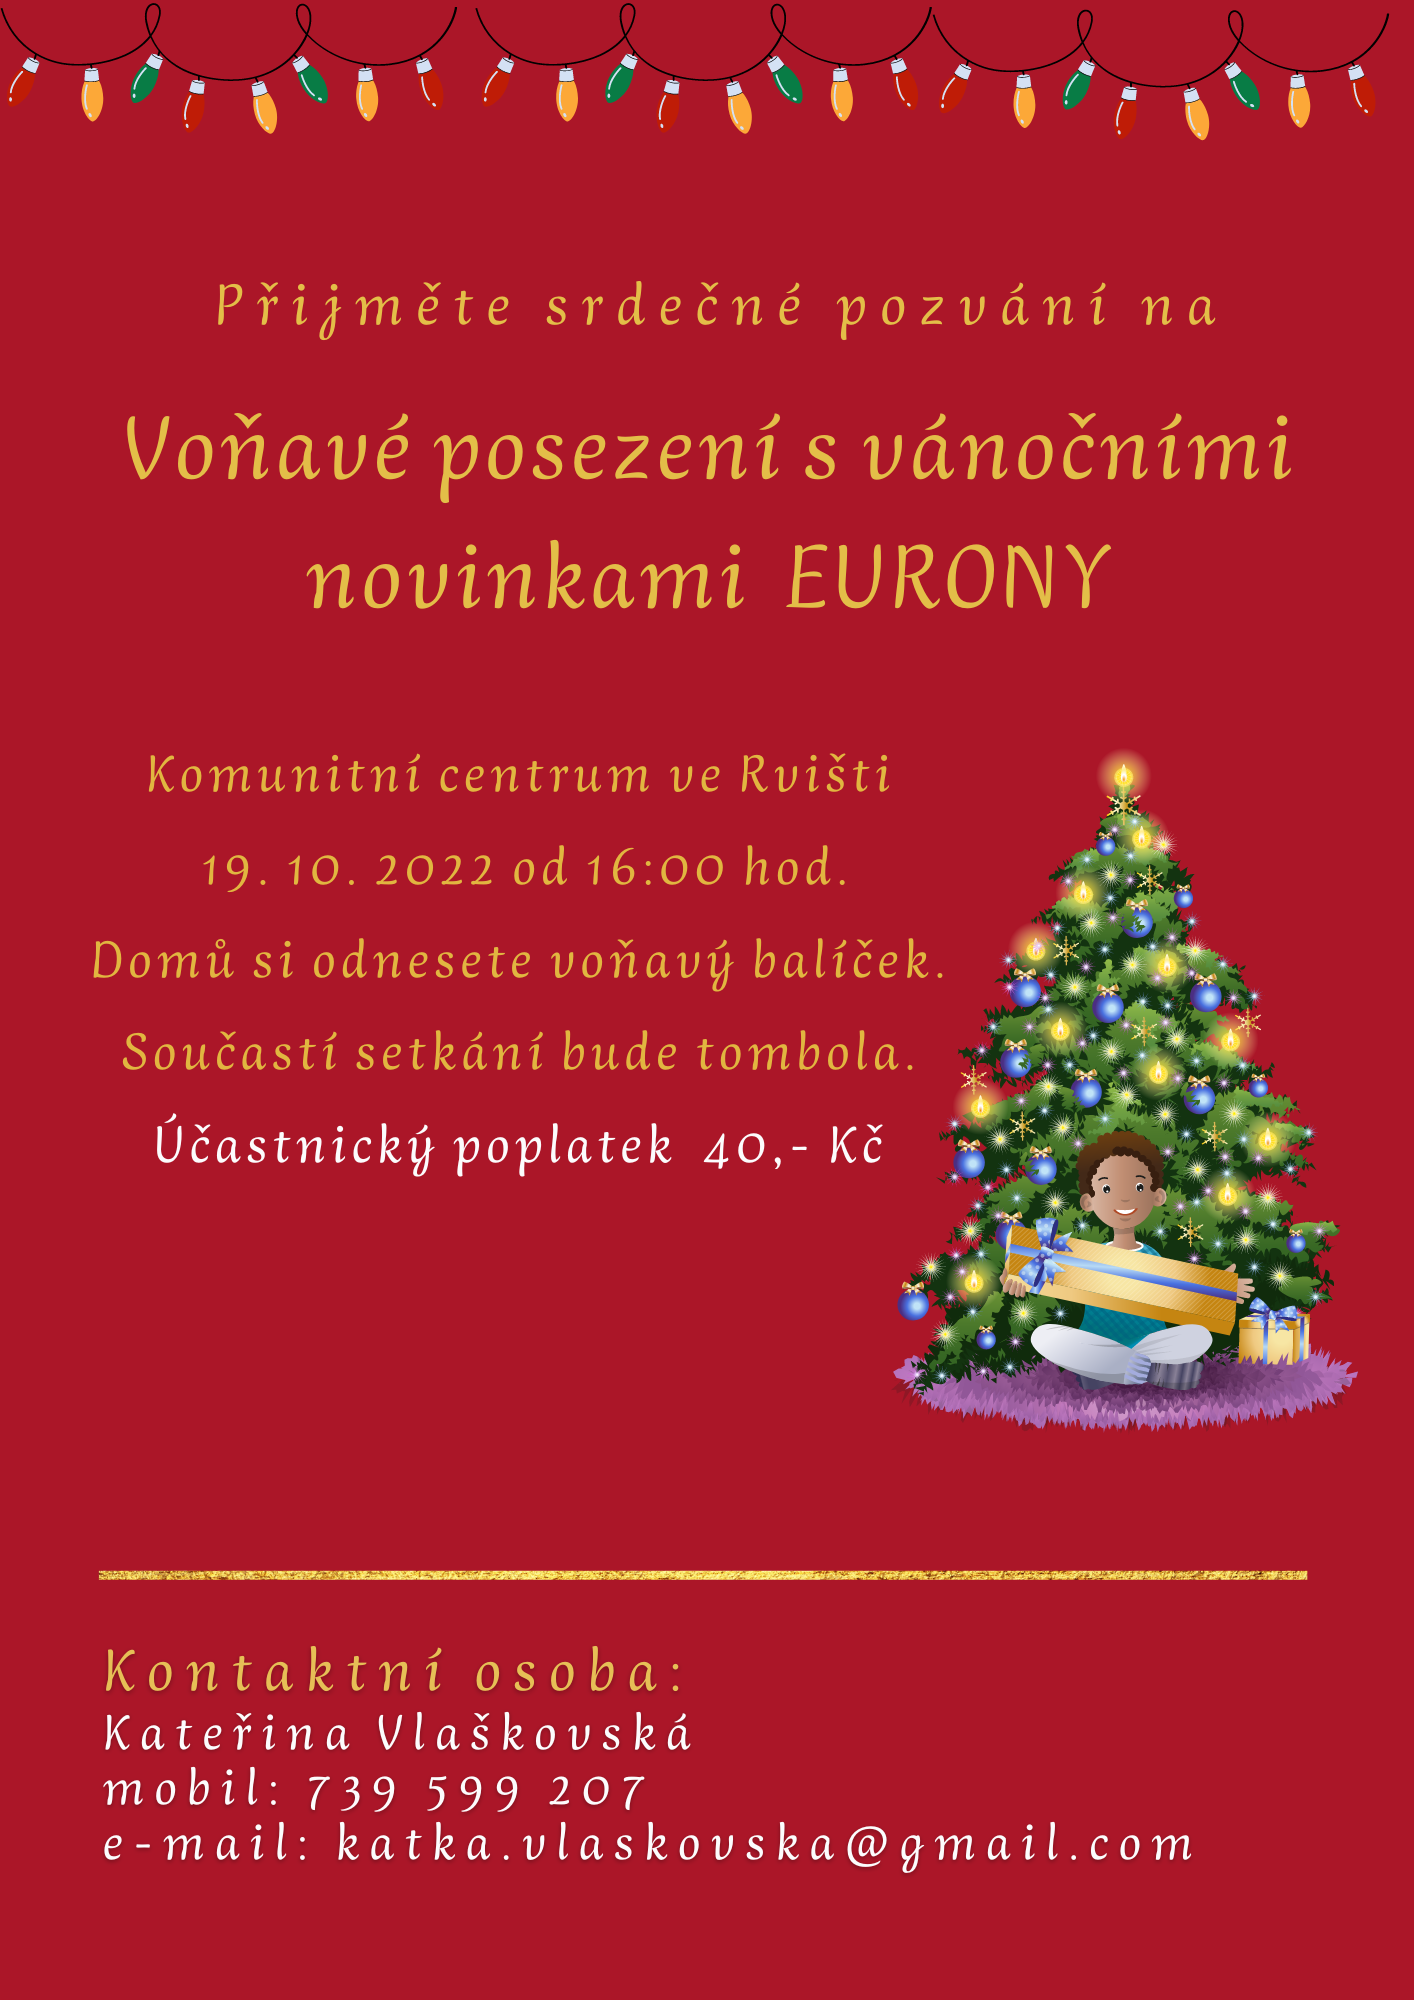 Vánoční posezení s EURONOU